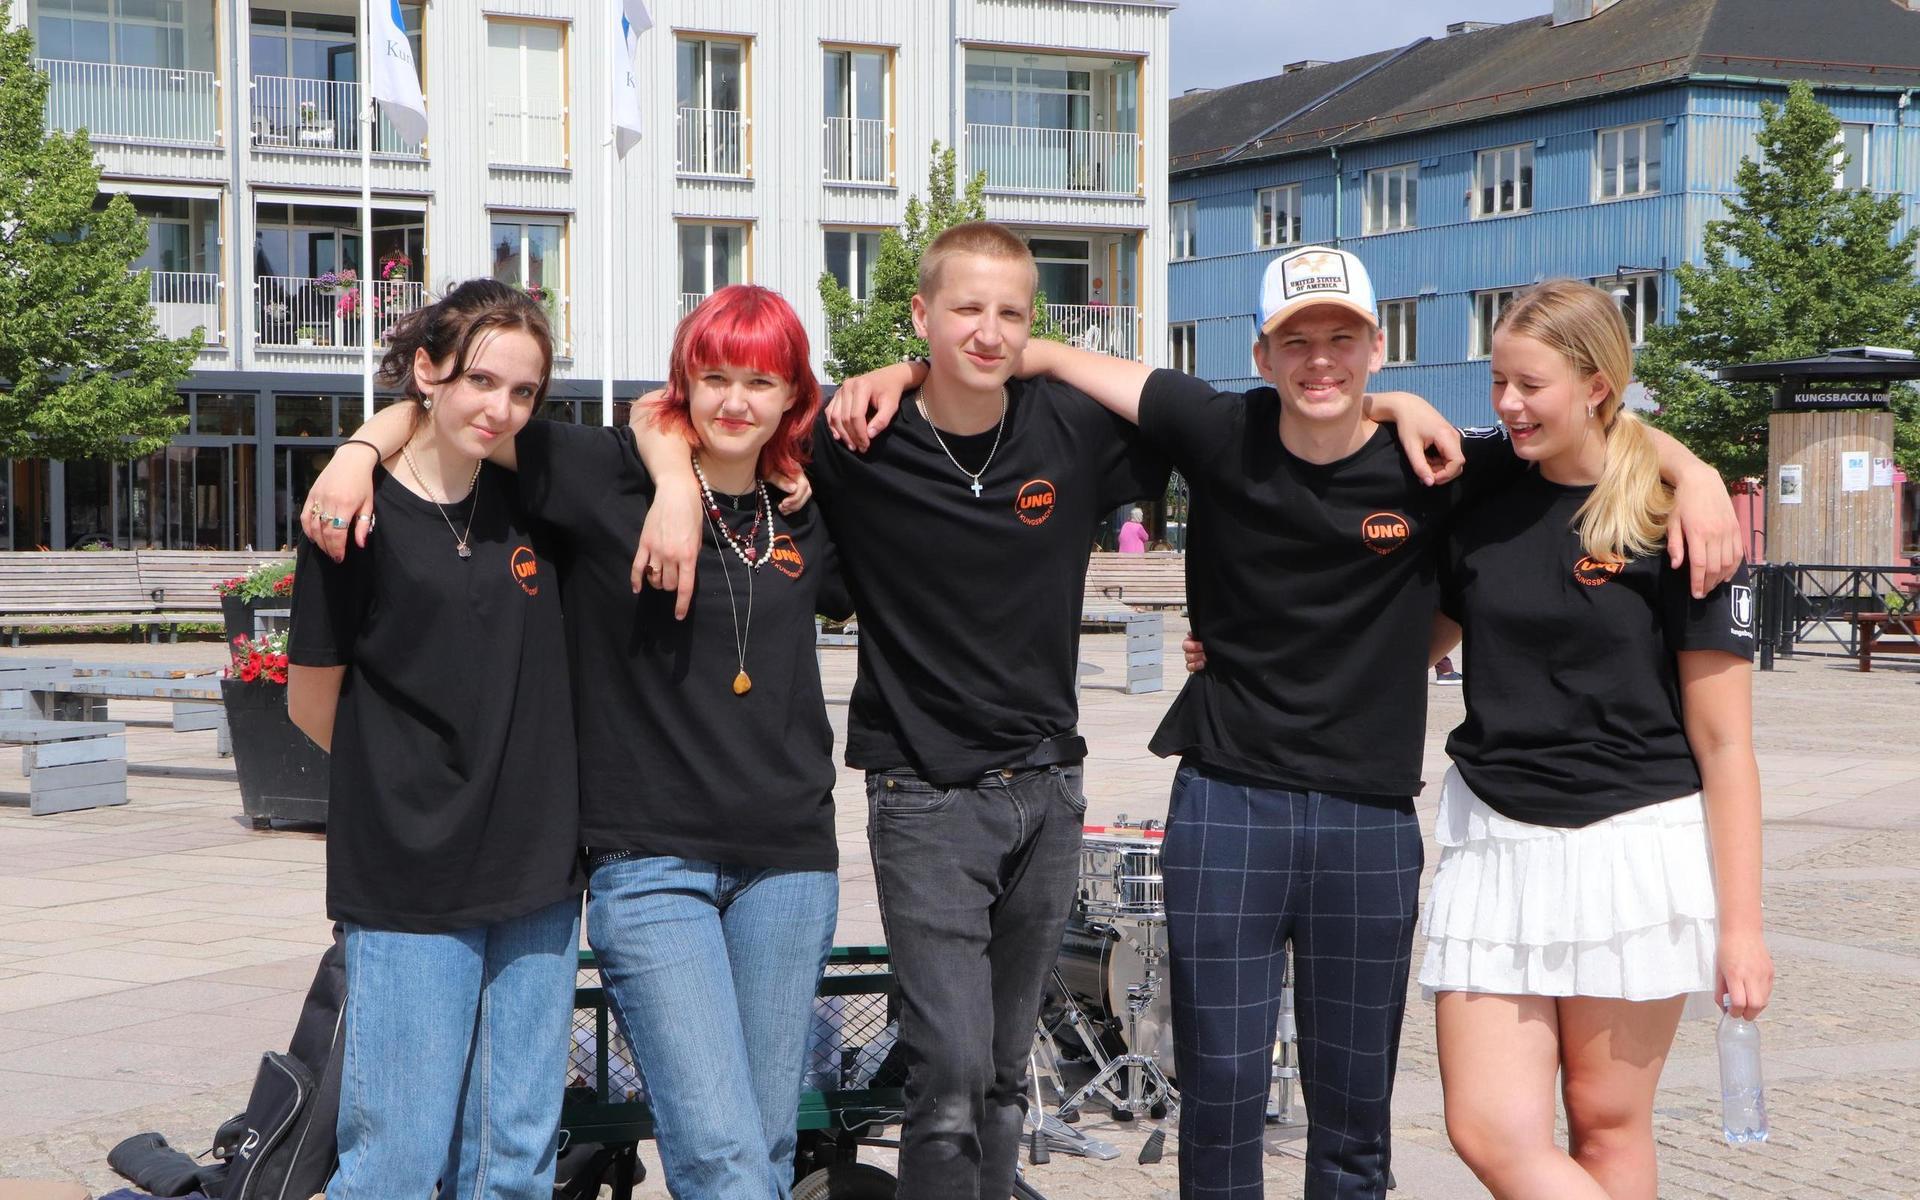 Siri Scholander, Tindra Magnusson, Alvin Roths, Olle Svensson och Ebba Hjälp är fem av Kungsbackas kultursommarjobbare.